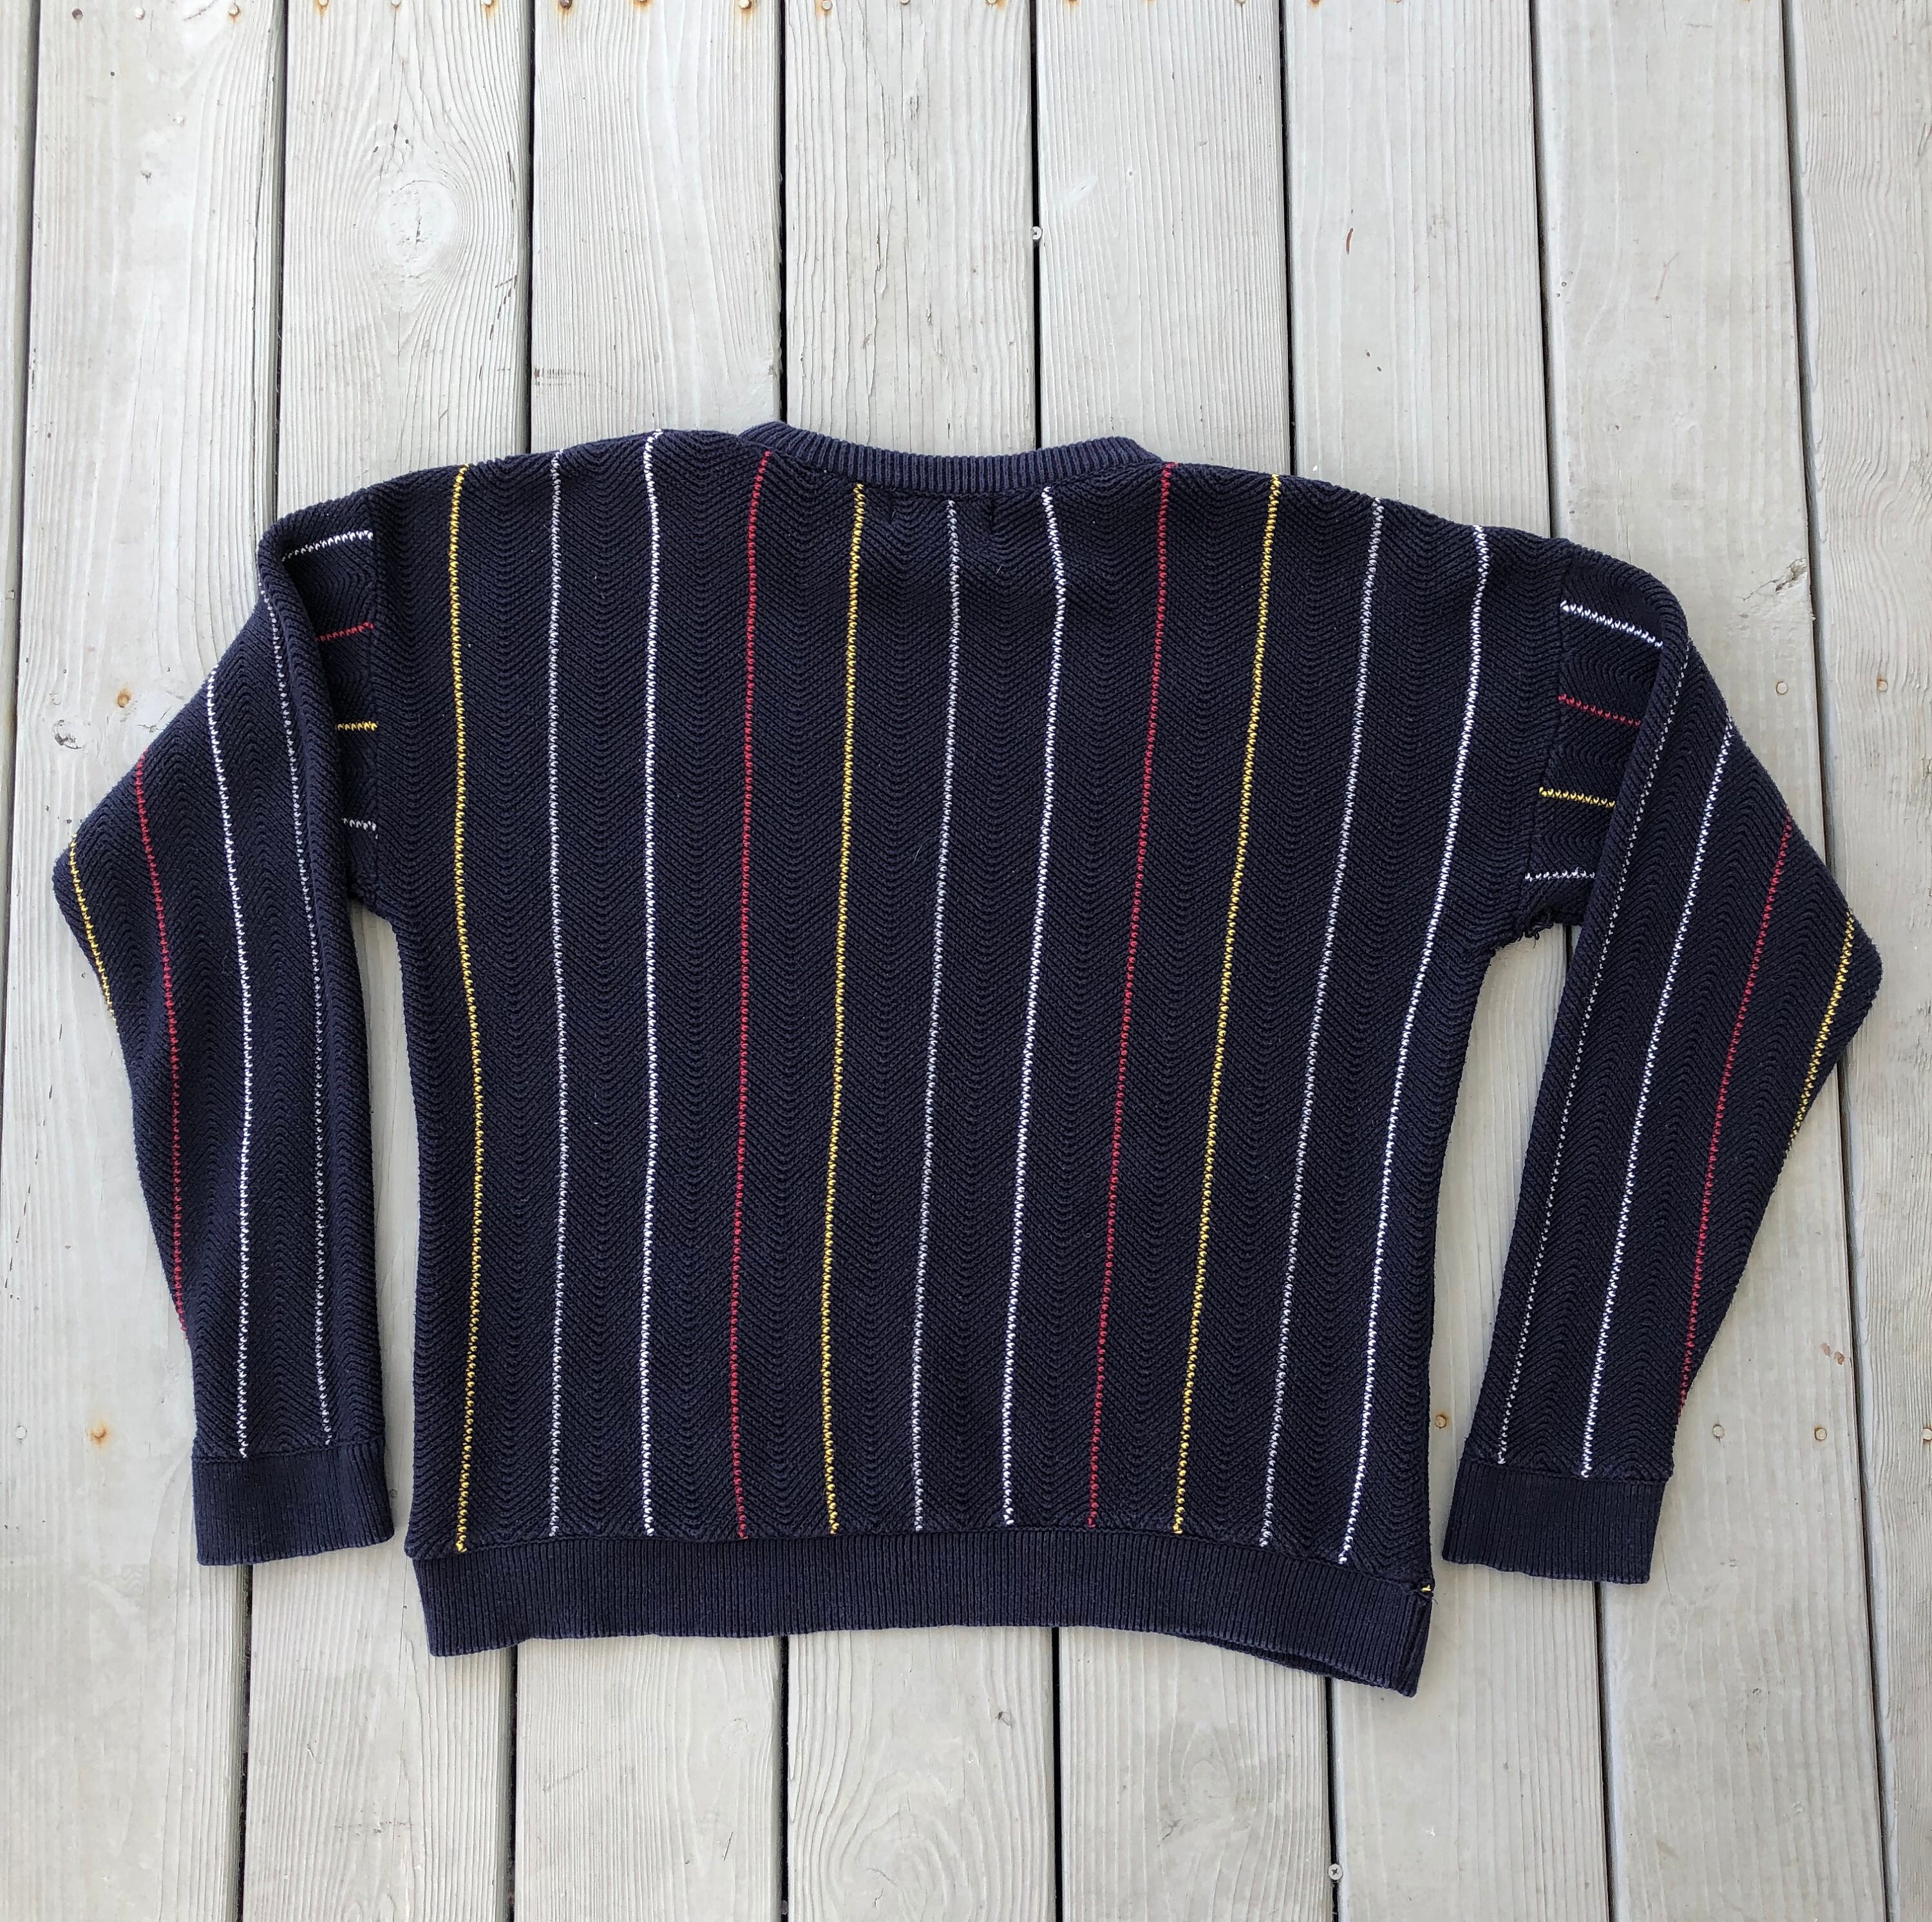 Vintage 1990's Chaps Ralph Lauren striped knit | Etsy